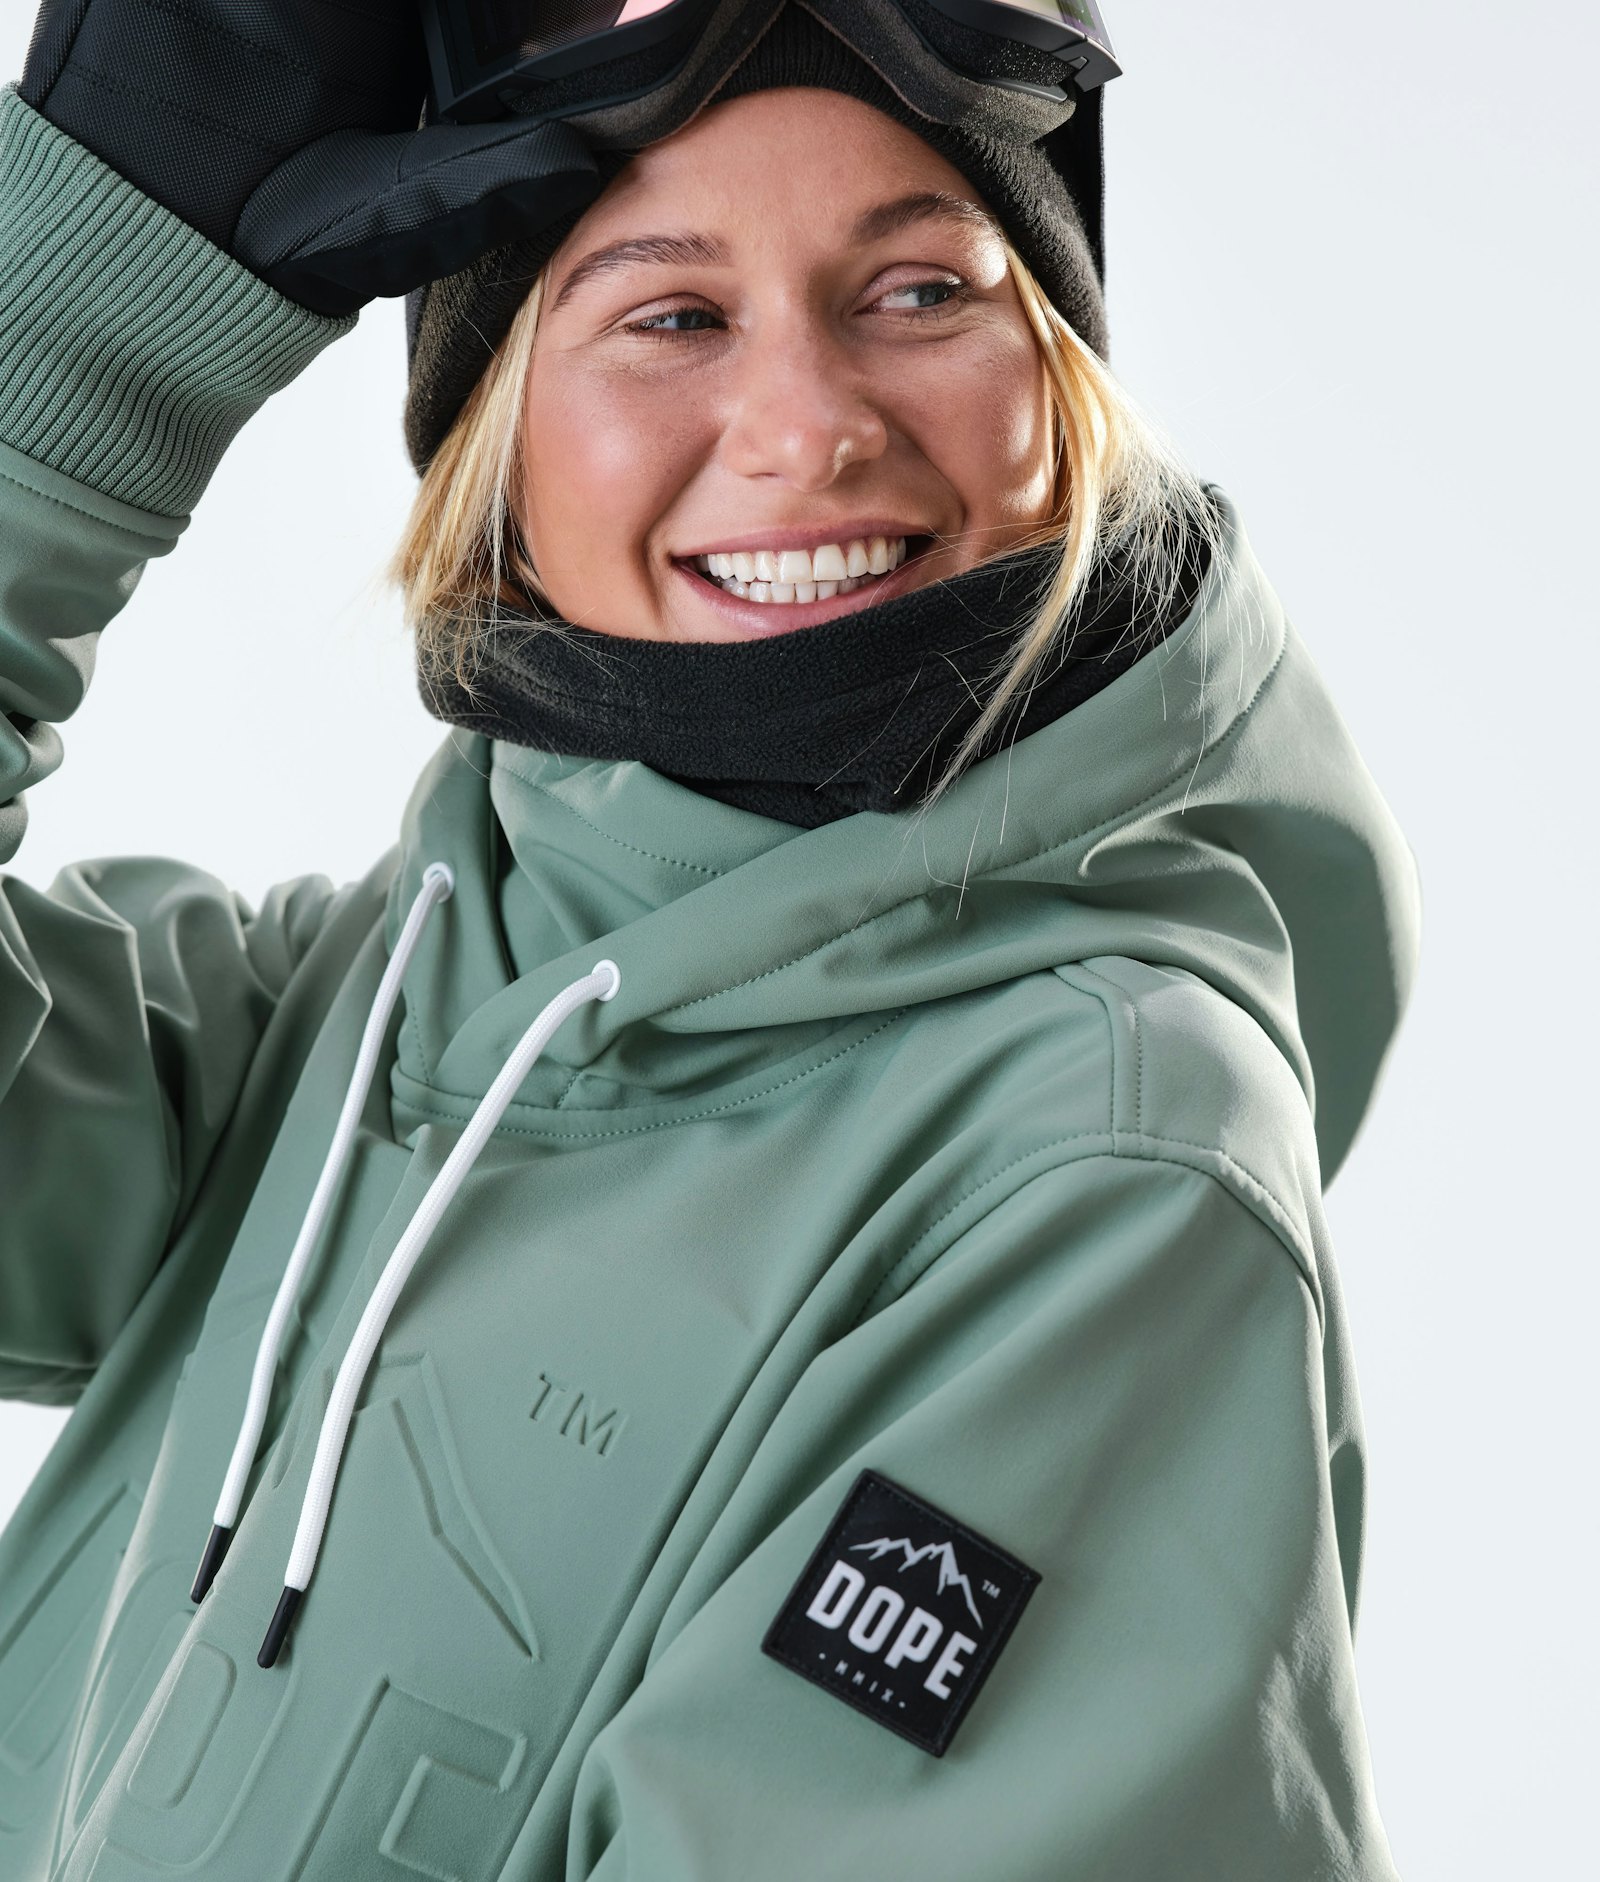 Yeti W 10k Veste Snowboard Femme EMB Faded Green